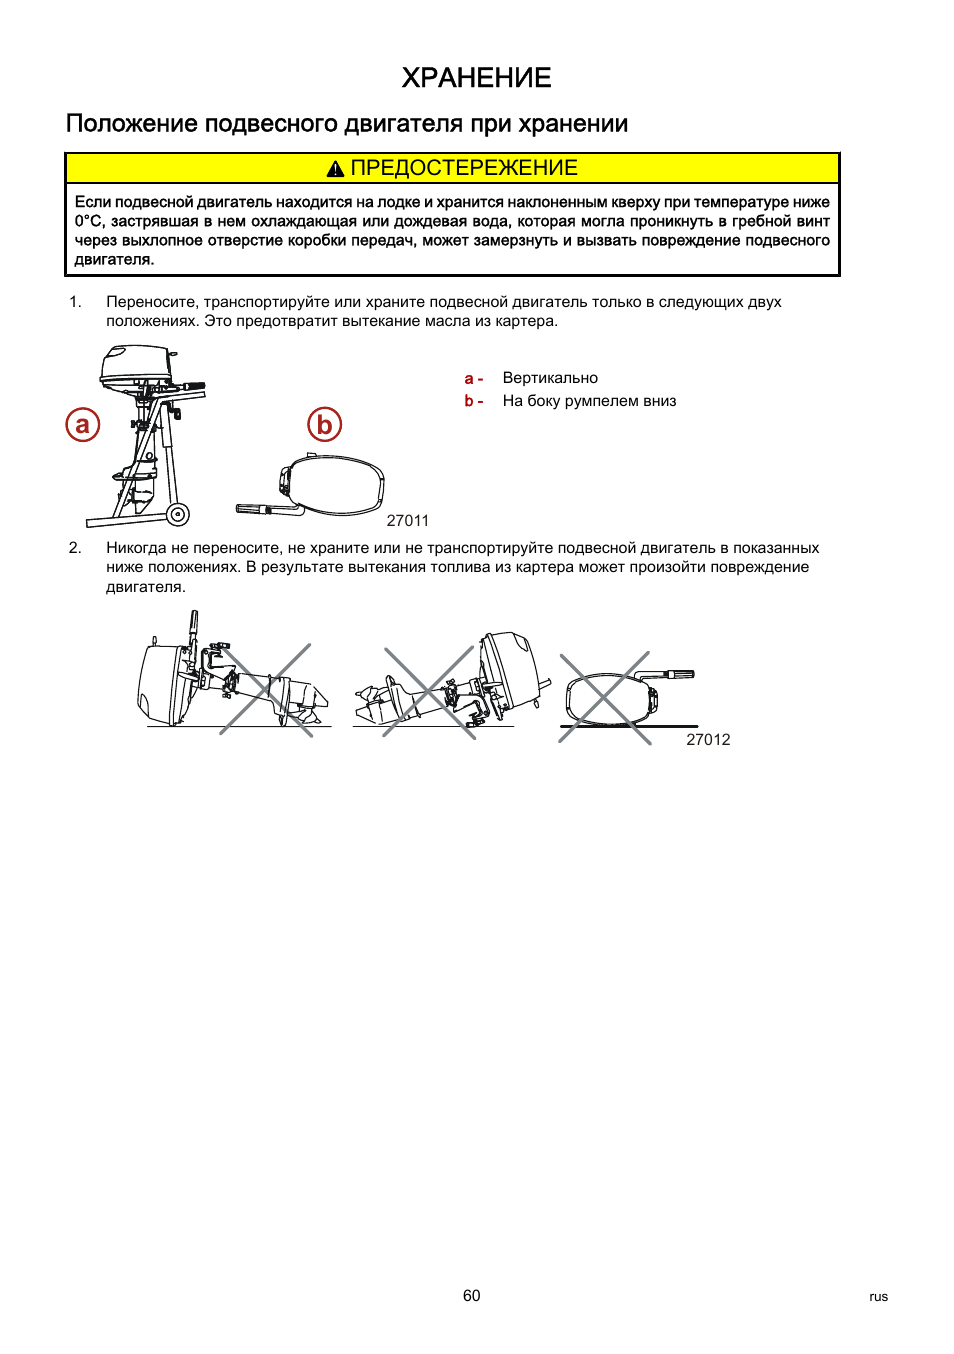 Положение подвесного двигателя при хранении, Хранение, Ab a b | Инструкция по эксплуатации Mercury F 5 M | Страница 68 / 71